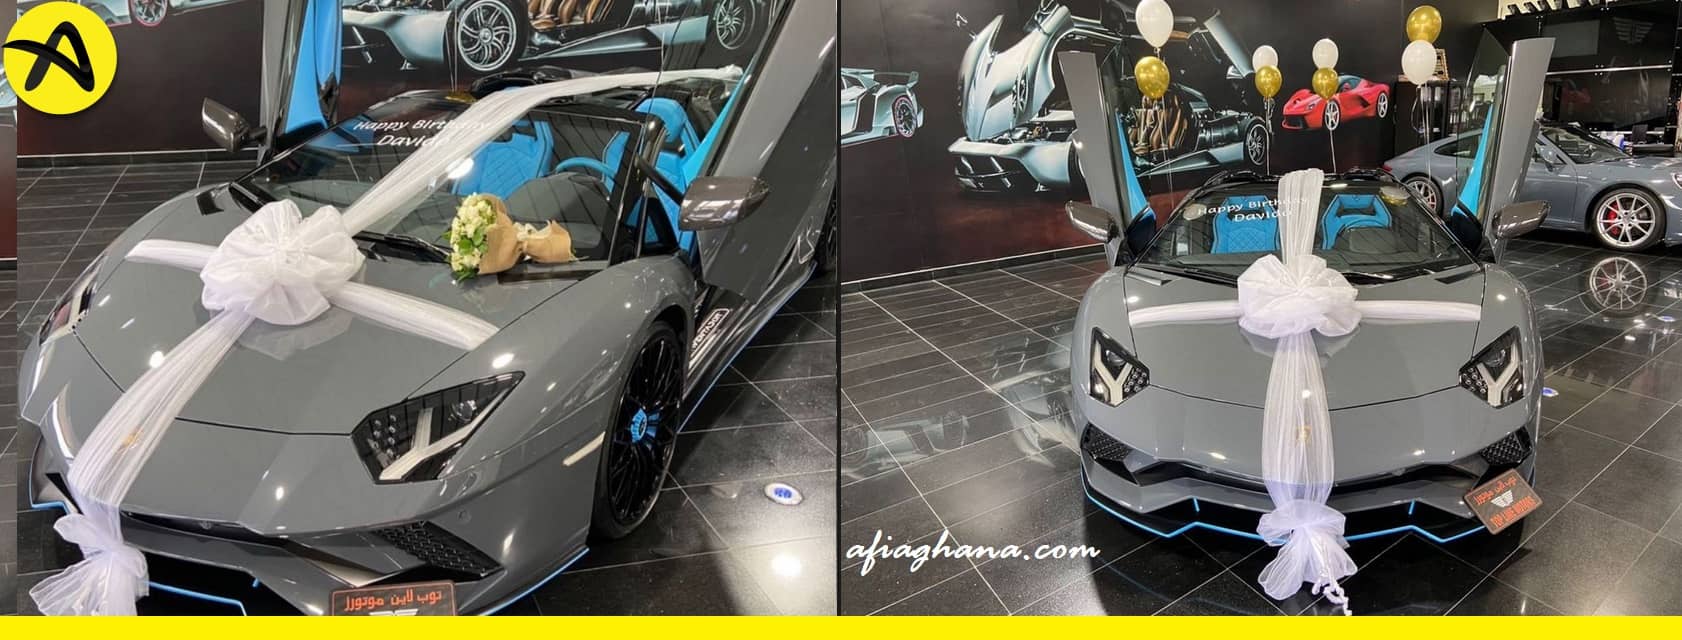 Davido Buys Brand New Lamborghini Aventador worth over $400,000 2